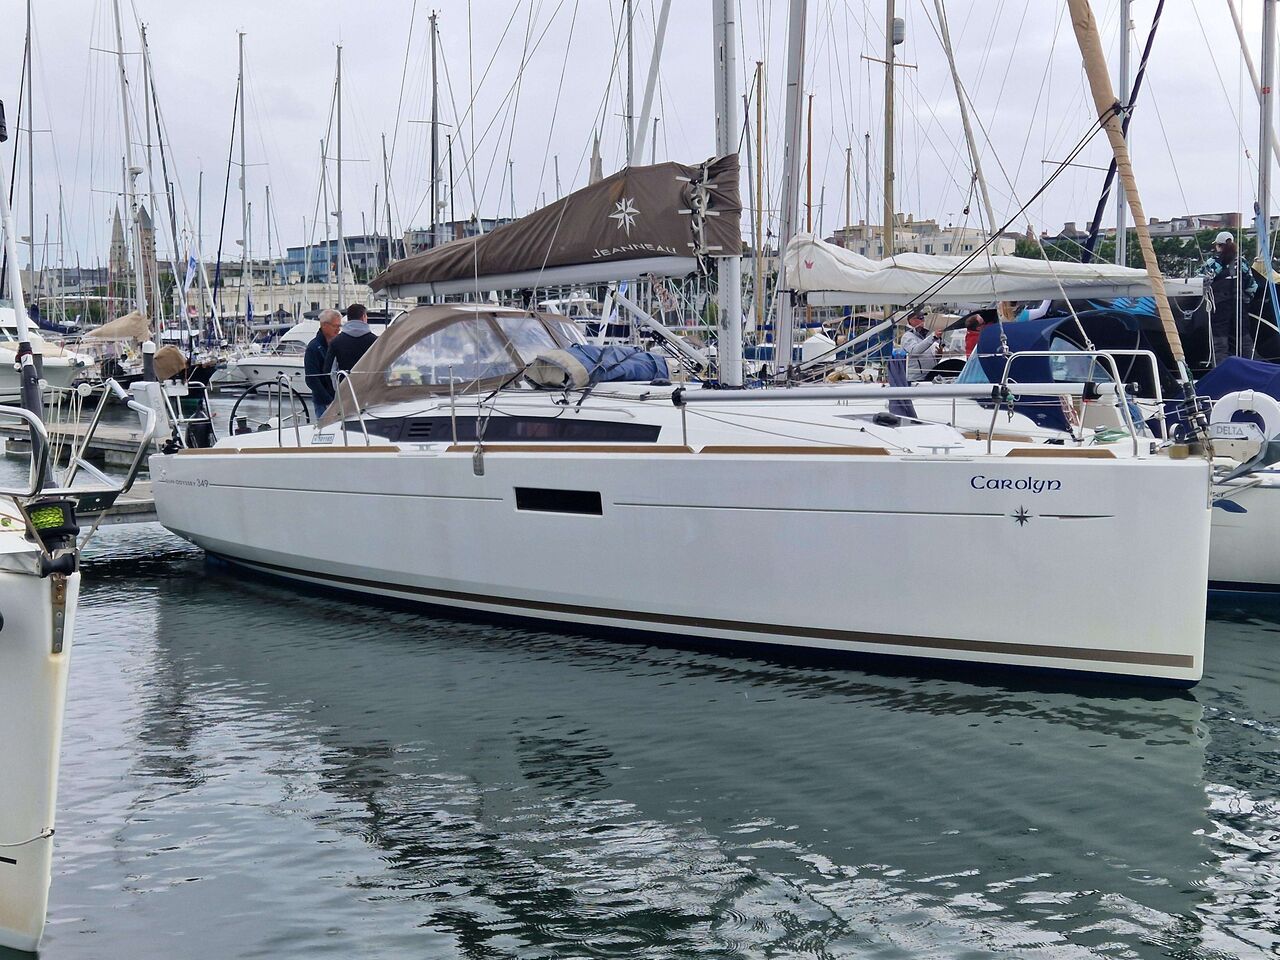 Jeanneau Sun Odyssey 349 (sailboat) for sale